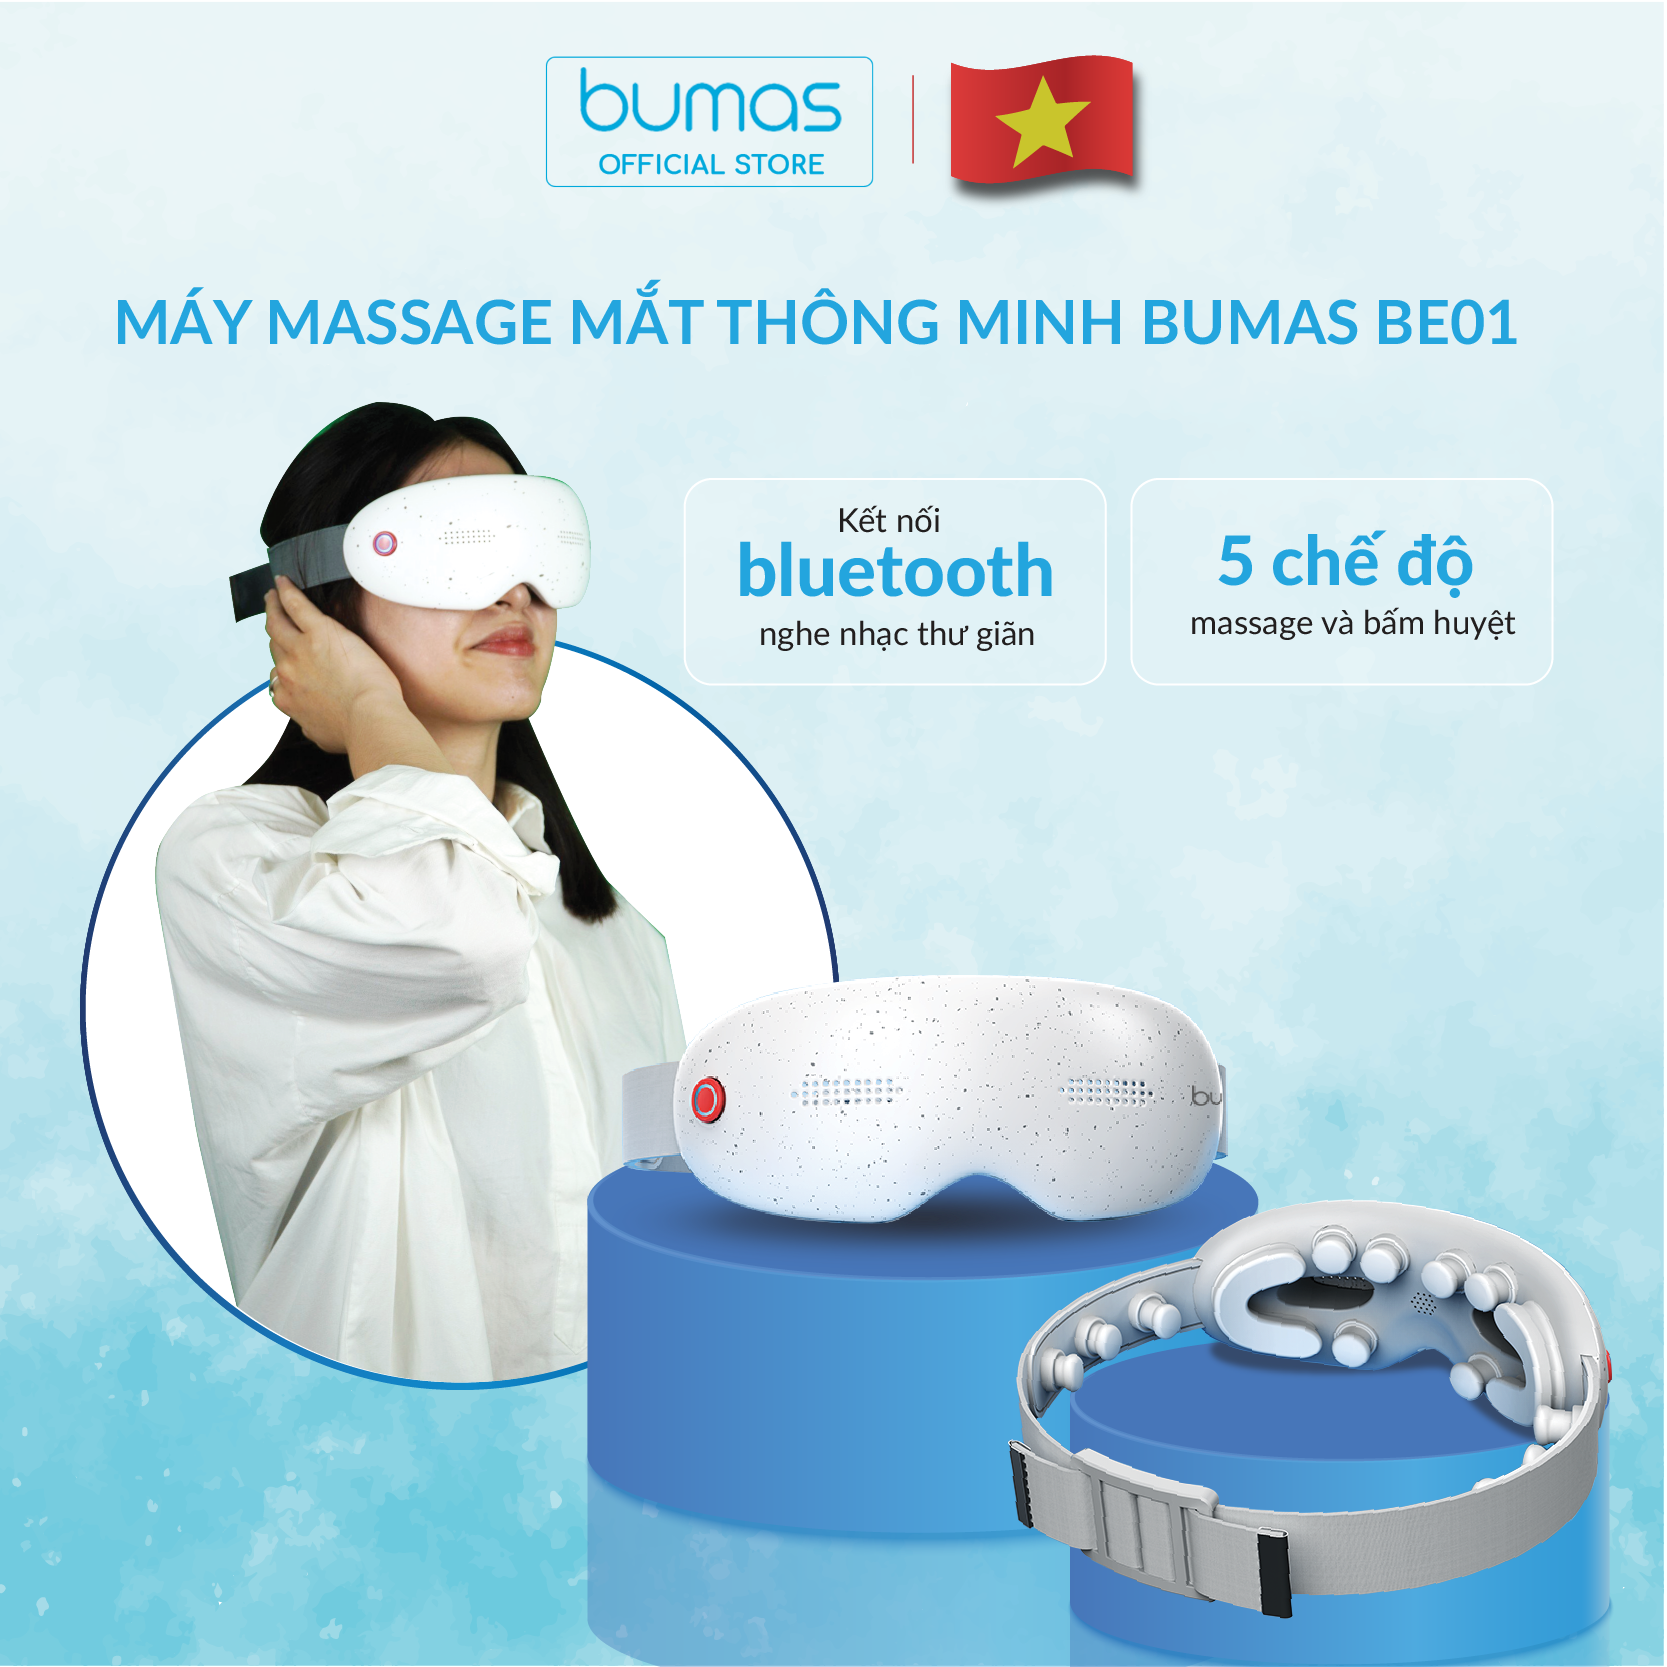 Máy massage mắt đa năng BUMAS BE01 - Mát xa đa điểm kết hợp chườm nóng - 5 chế độ lựa chọn - Kết nối Bluetooth nghe nhạc thư thái